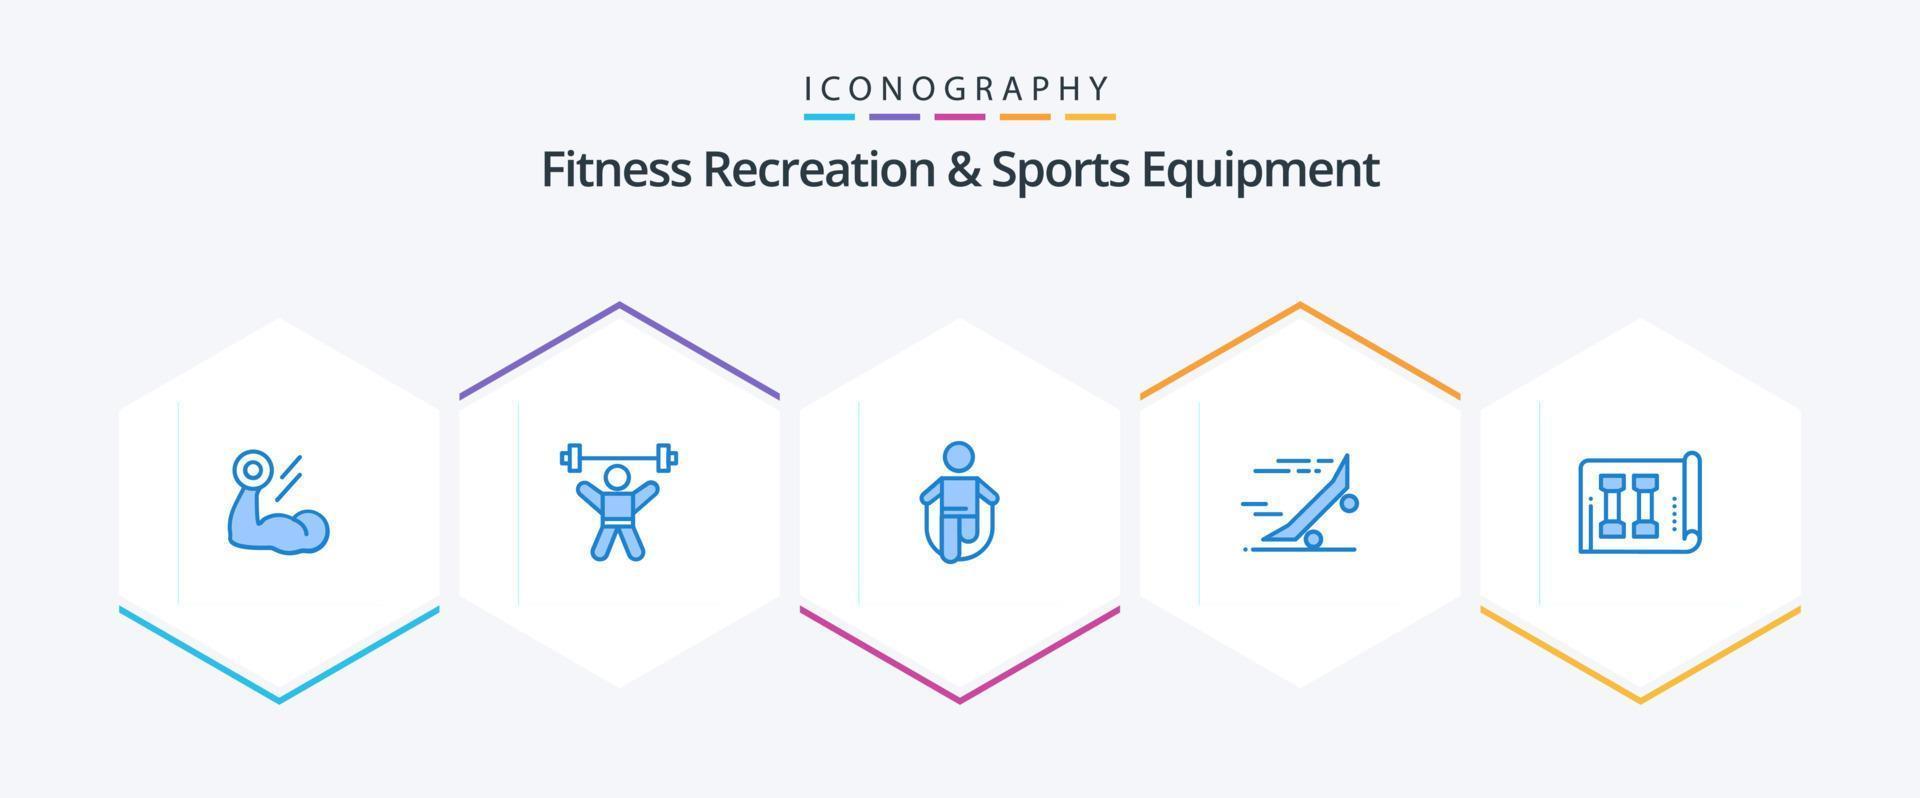 recreação de fitness e equipamentos esportivos 25 pacote de ícones azuis, incluindo equitação. velozes. ginástica. pulando. pulando vetor